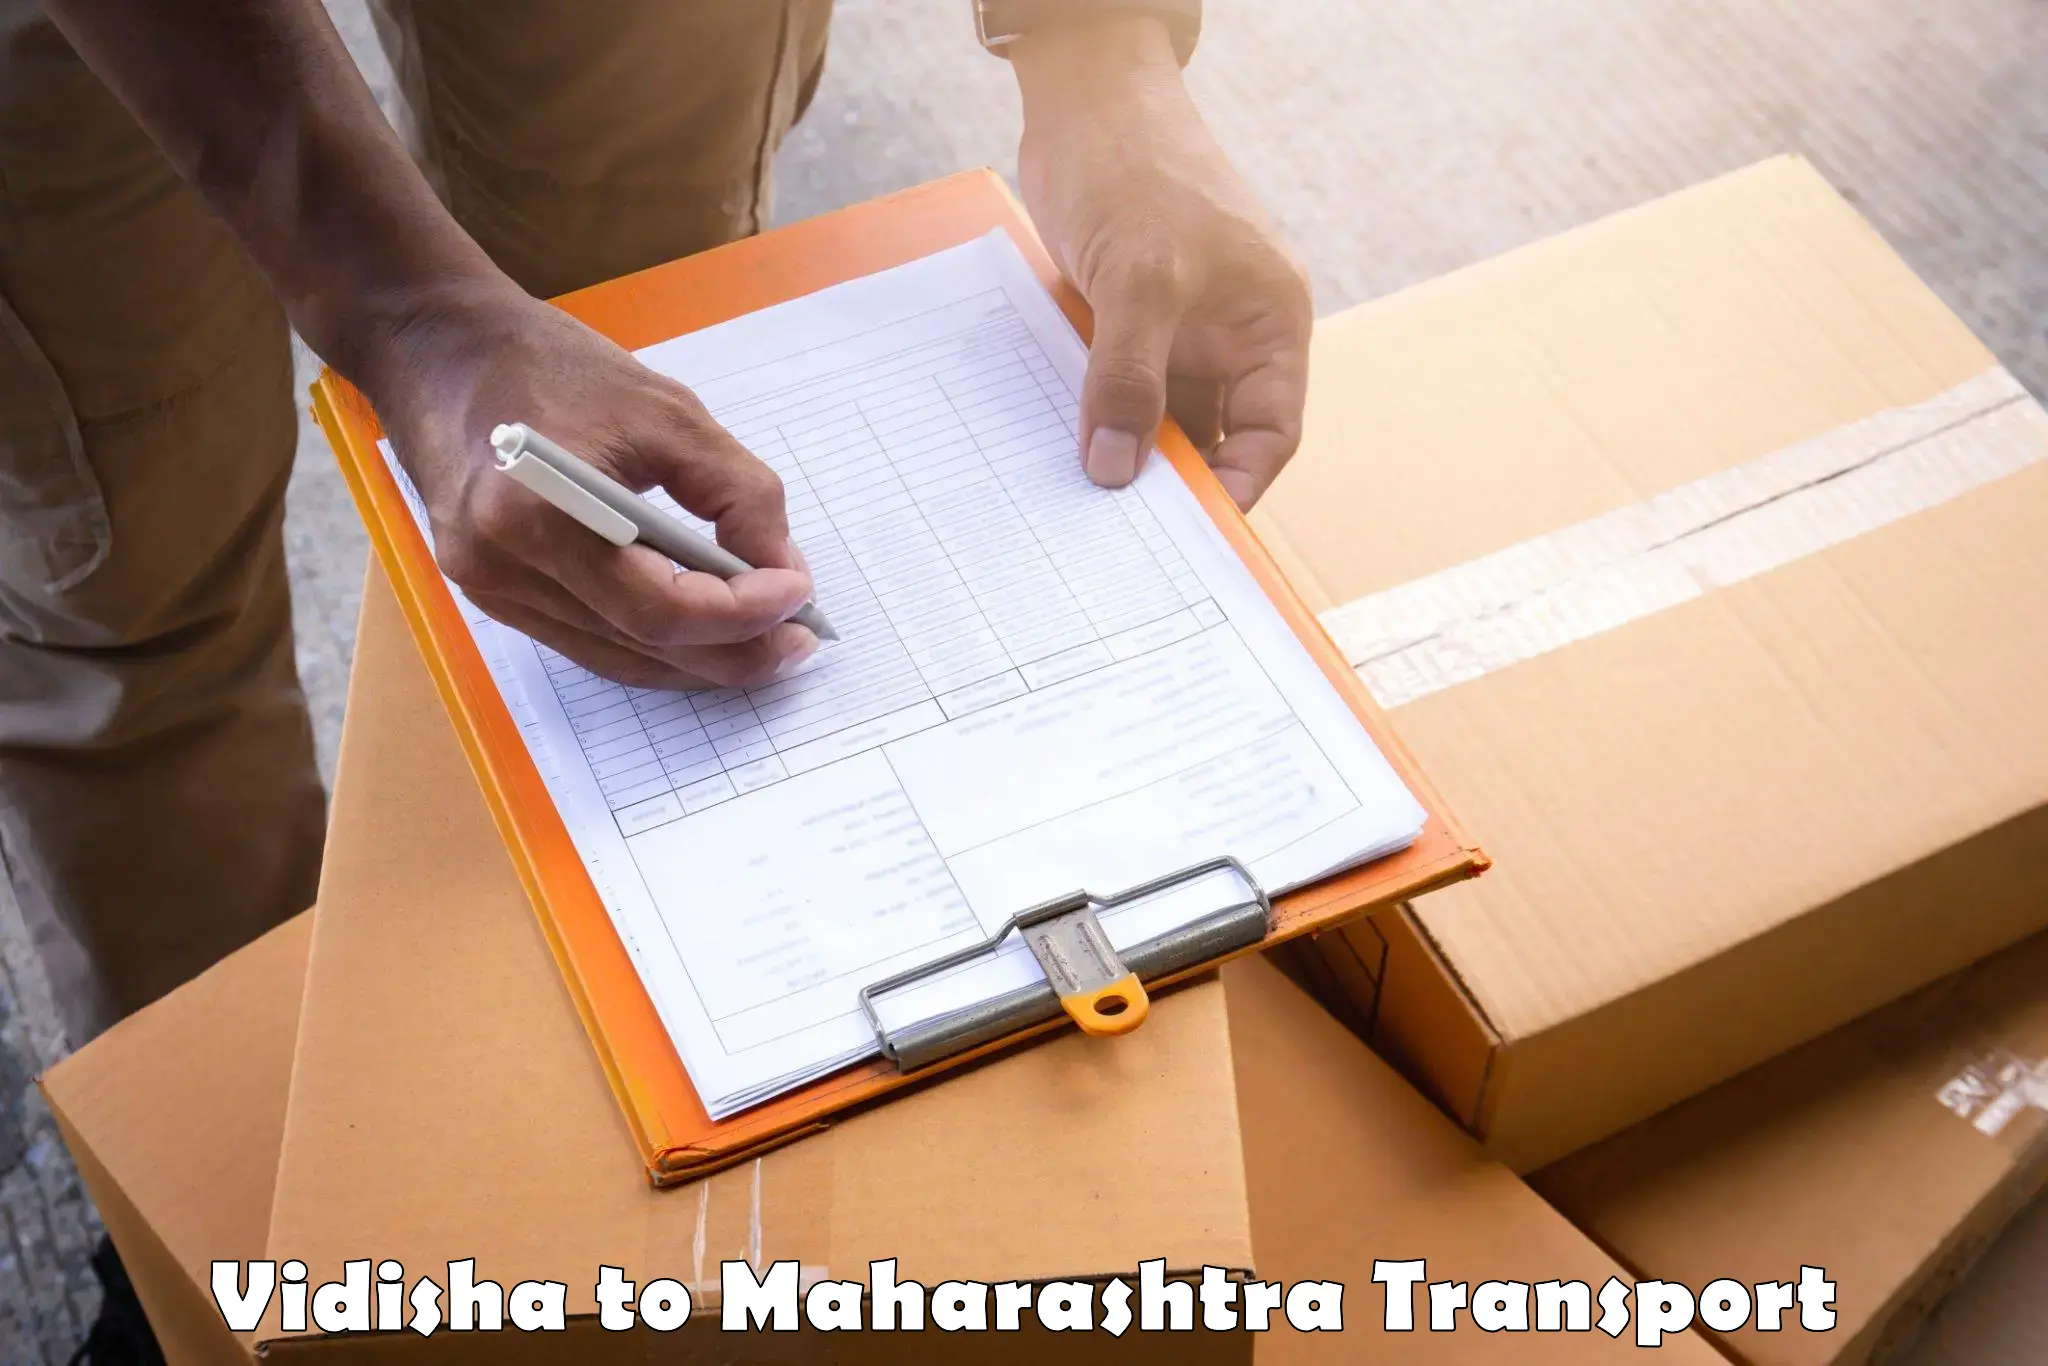 Container transport service Vidisha to Khandala Pune